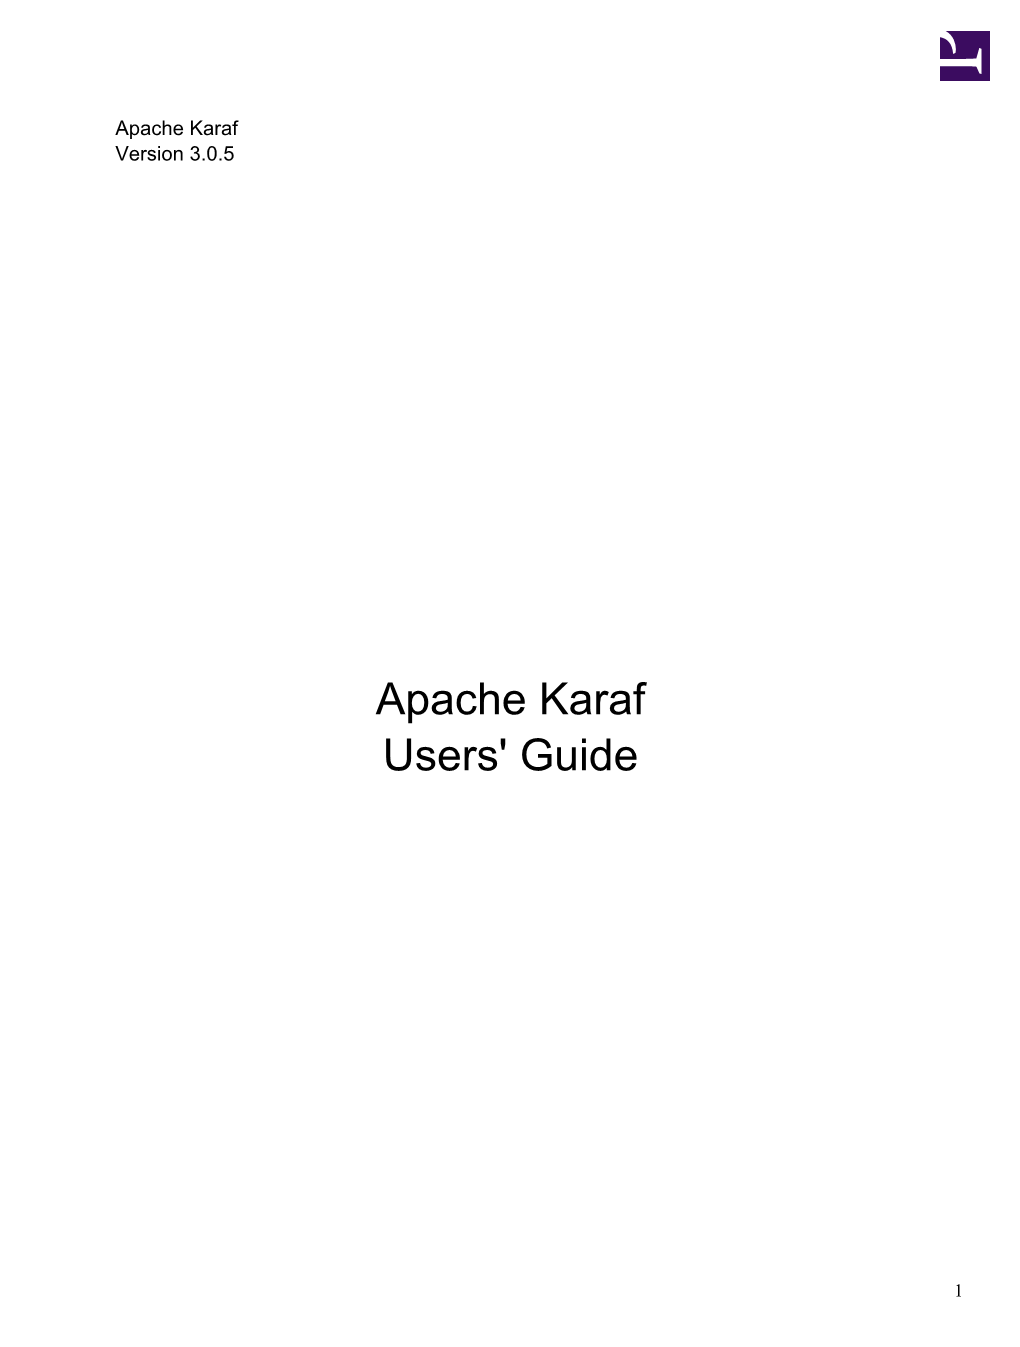 Apache Karaf 3.0.5 Guides